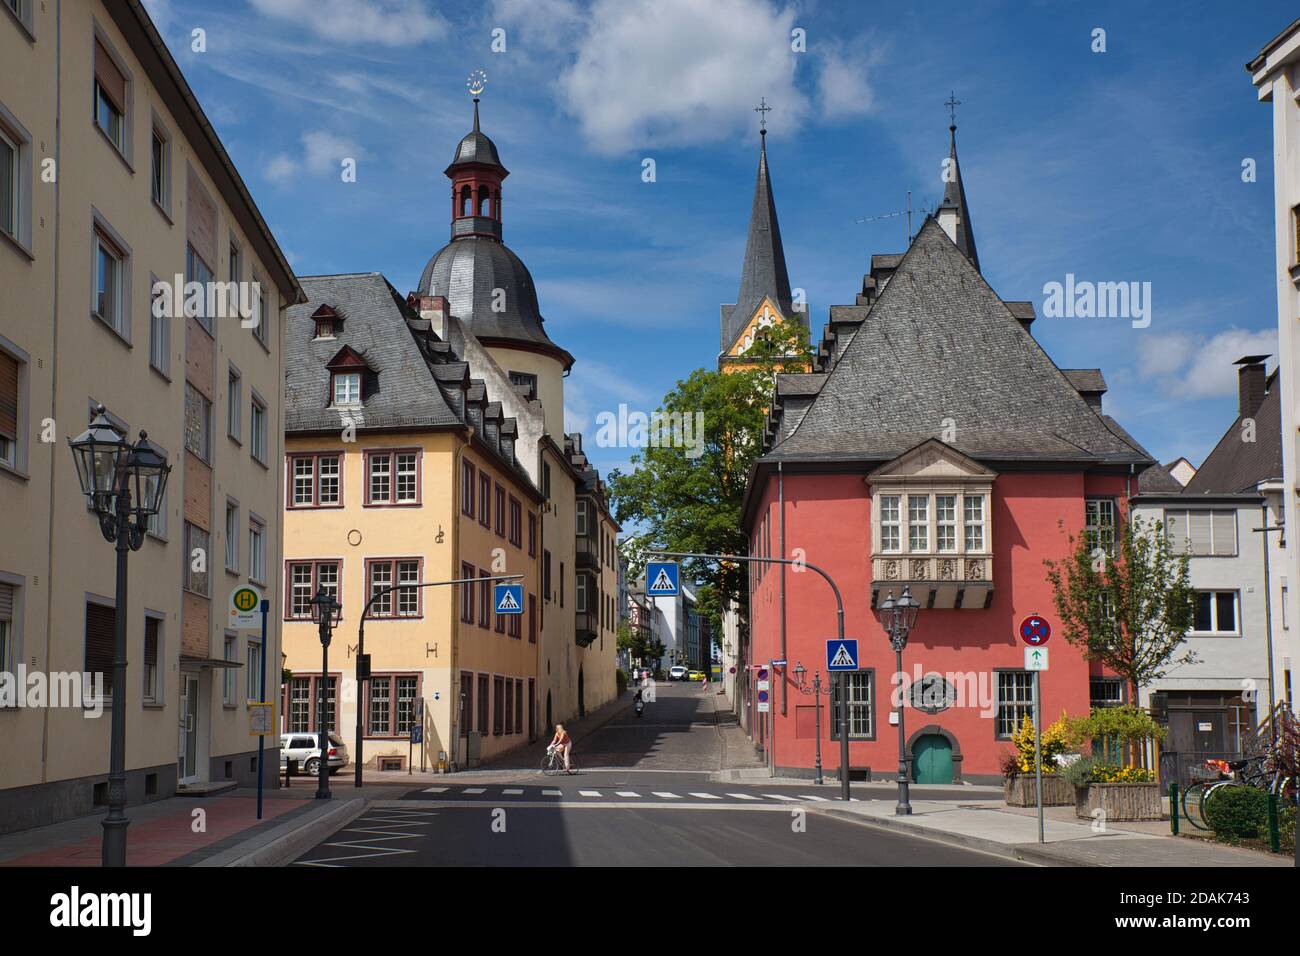 Ein Platz mit farbenfroher Architektur und Straßen, die in der Stadt Koblenz in der Nähe des Rheins münden Stockfoto